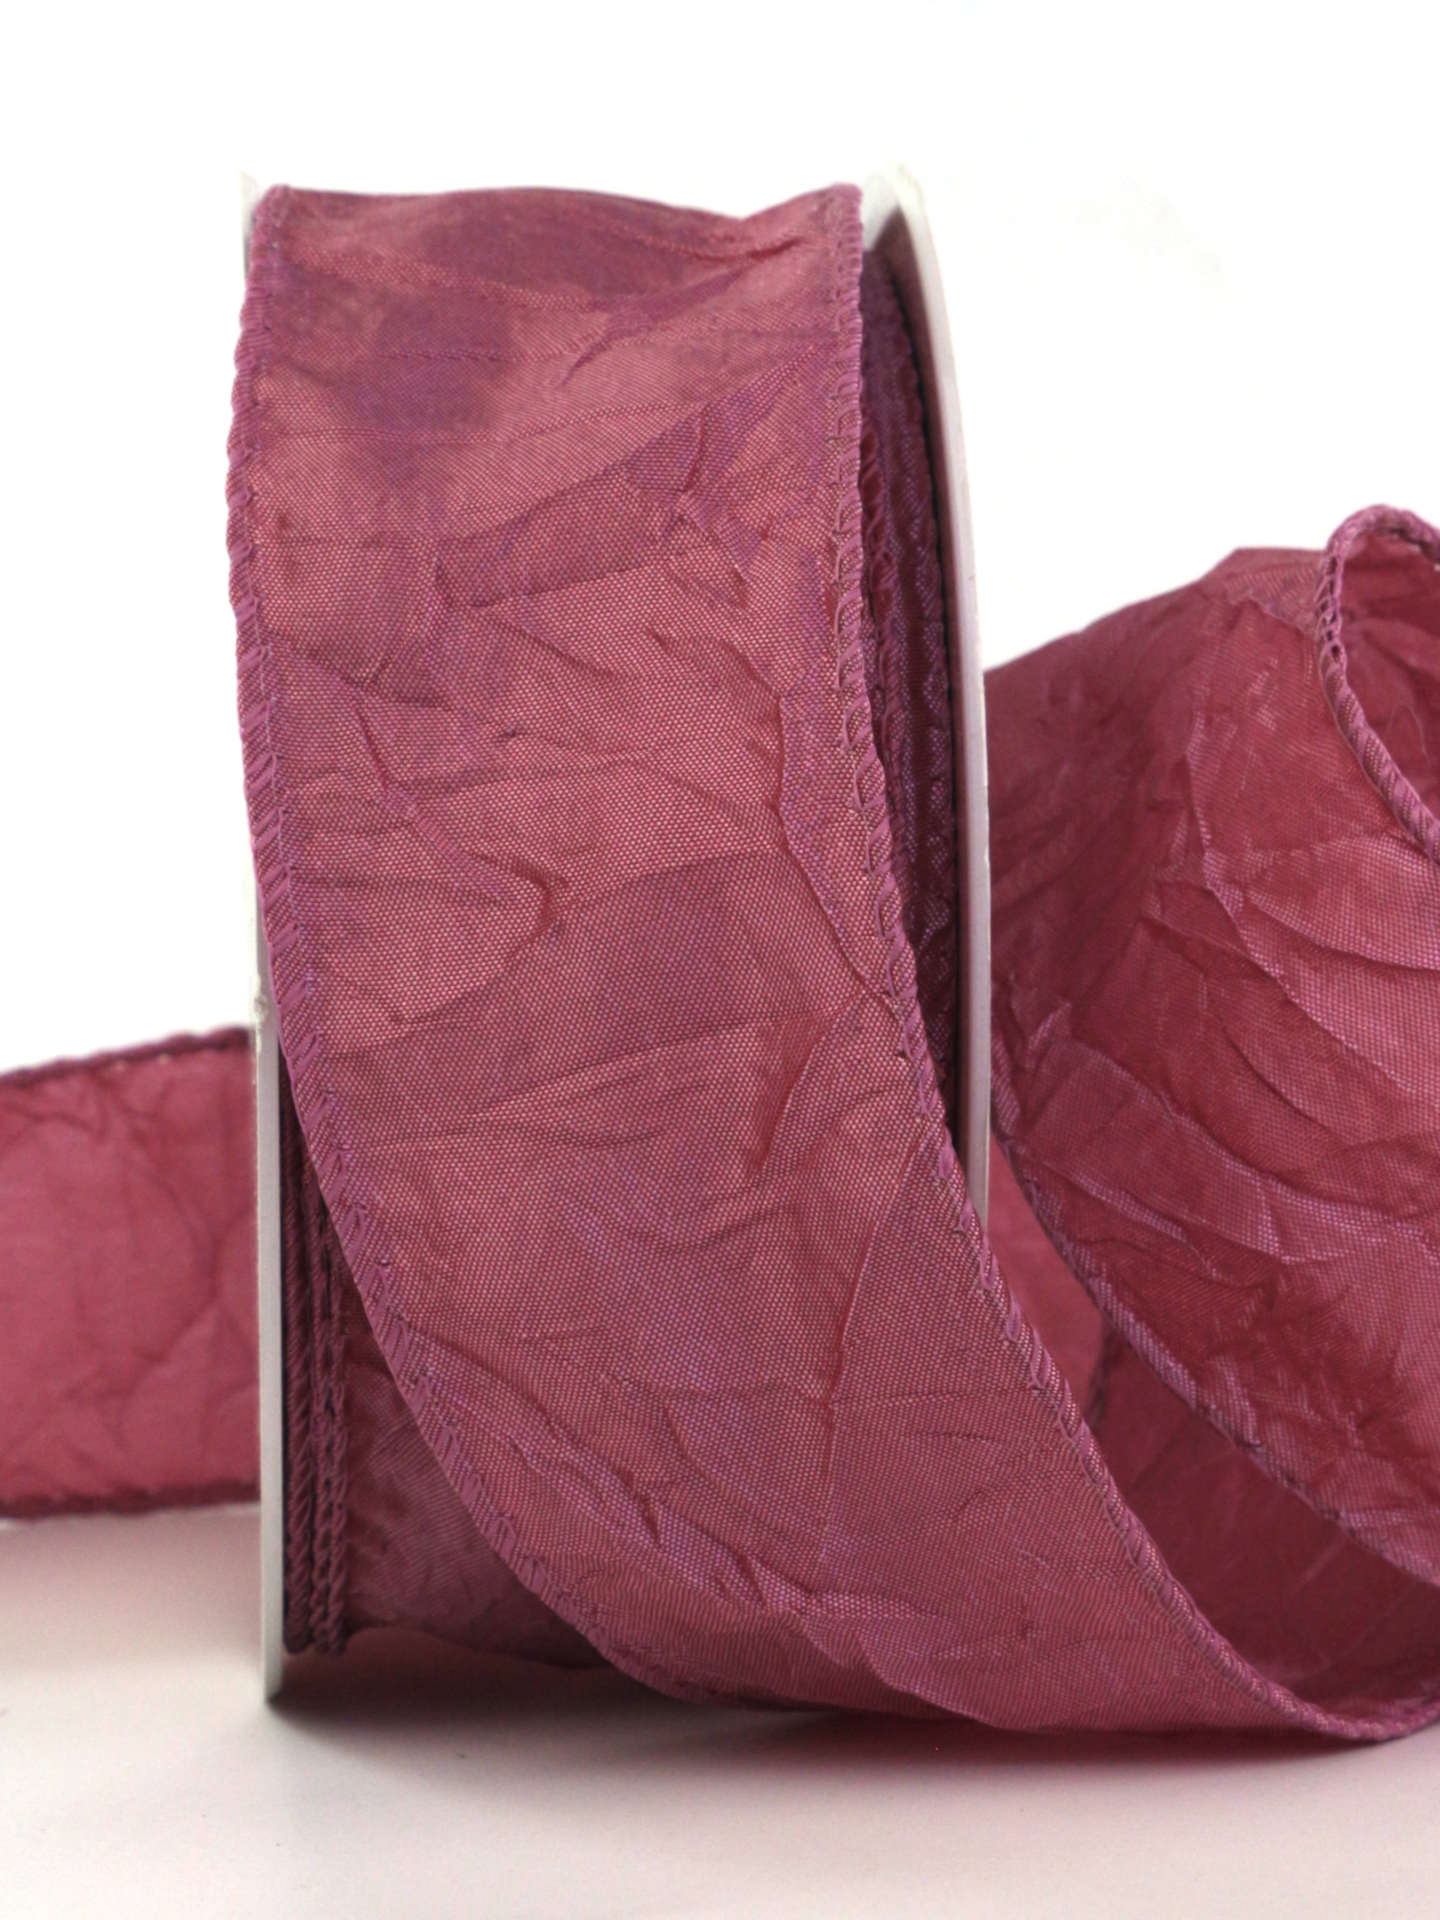 Crash-Stoffband, altrosa, 50 mm breit, 10 m Rolle - geschenkband, geschenkband-einfarbig, dekoband